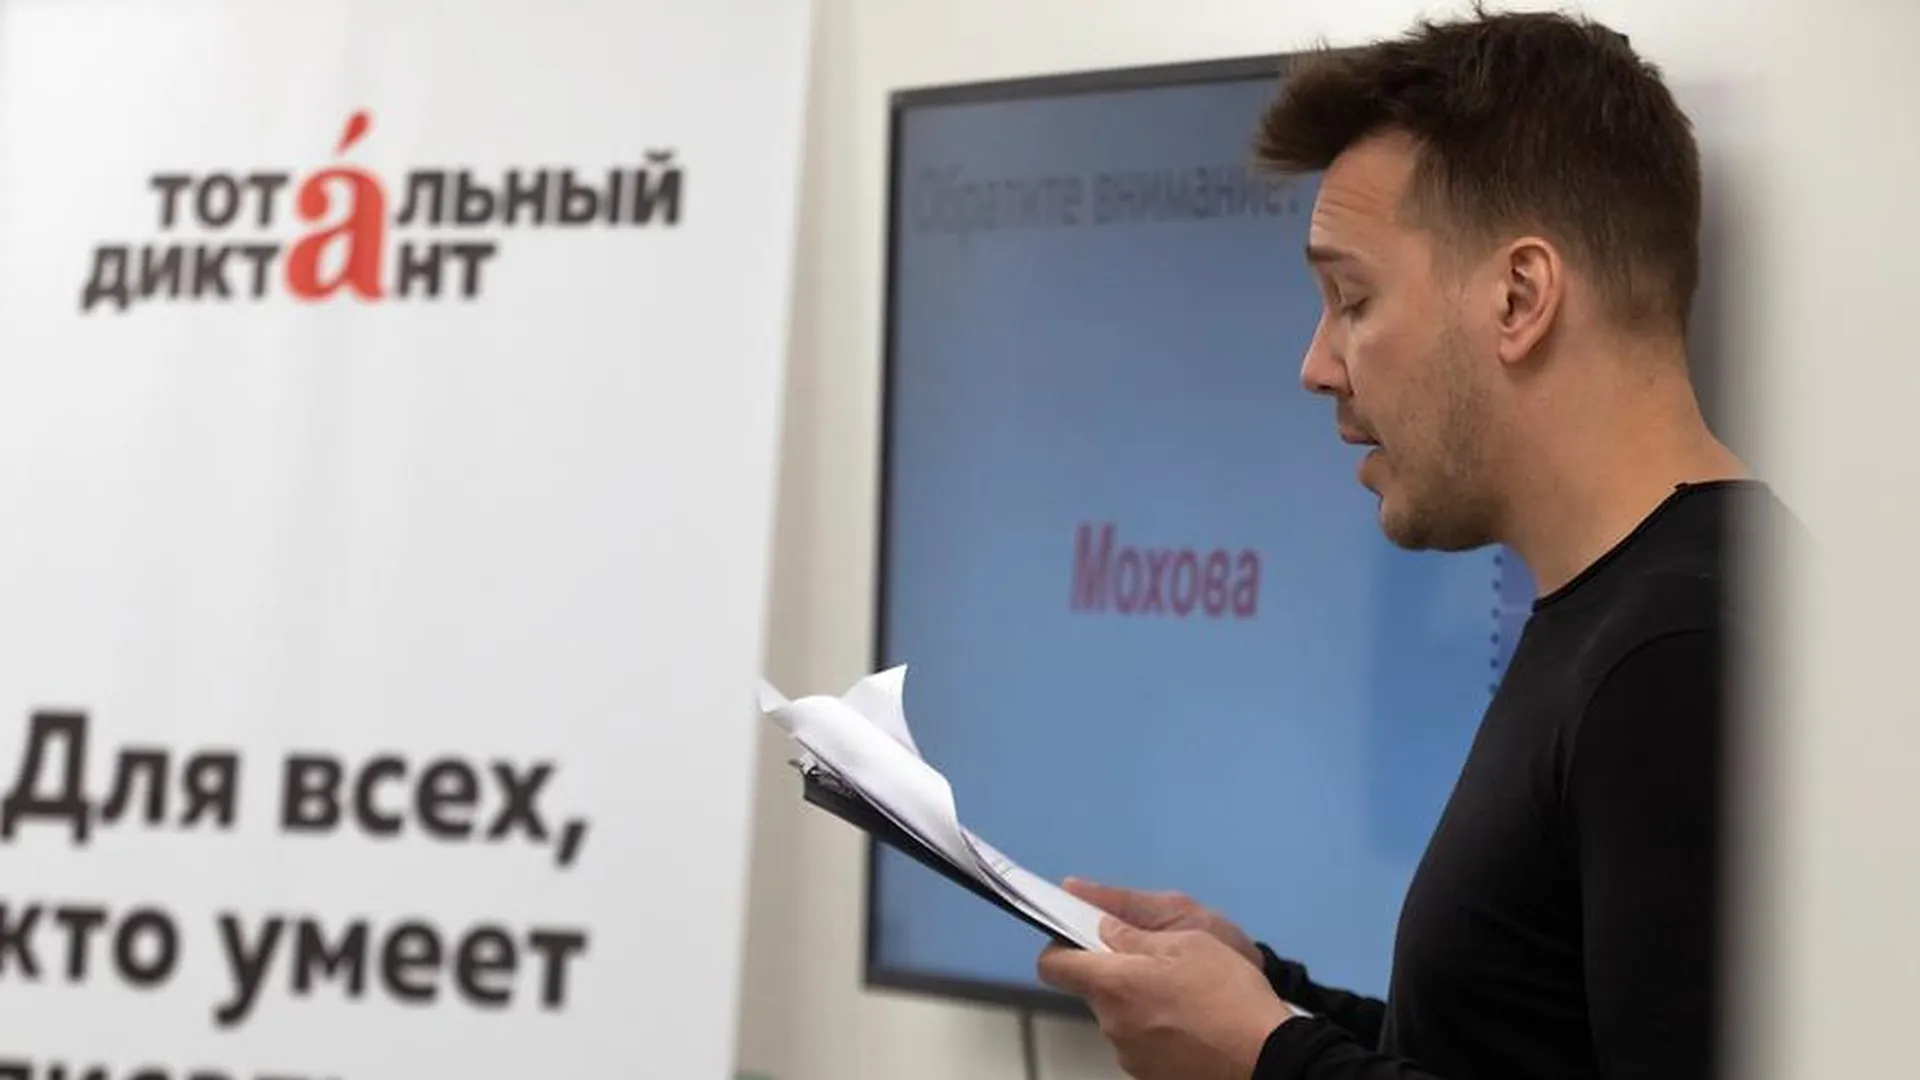 МВД России объявило в розыск журналиста Михаила Зыгаря*